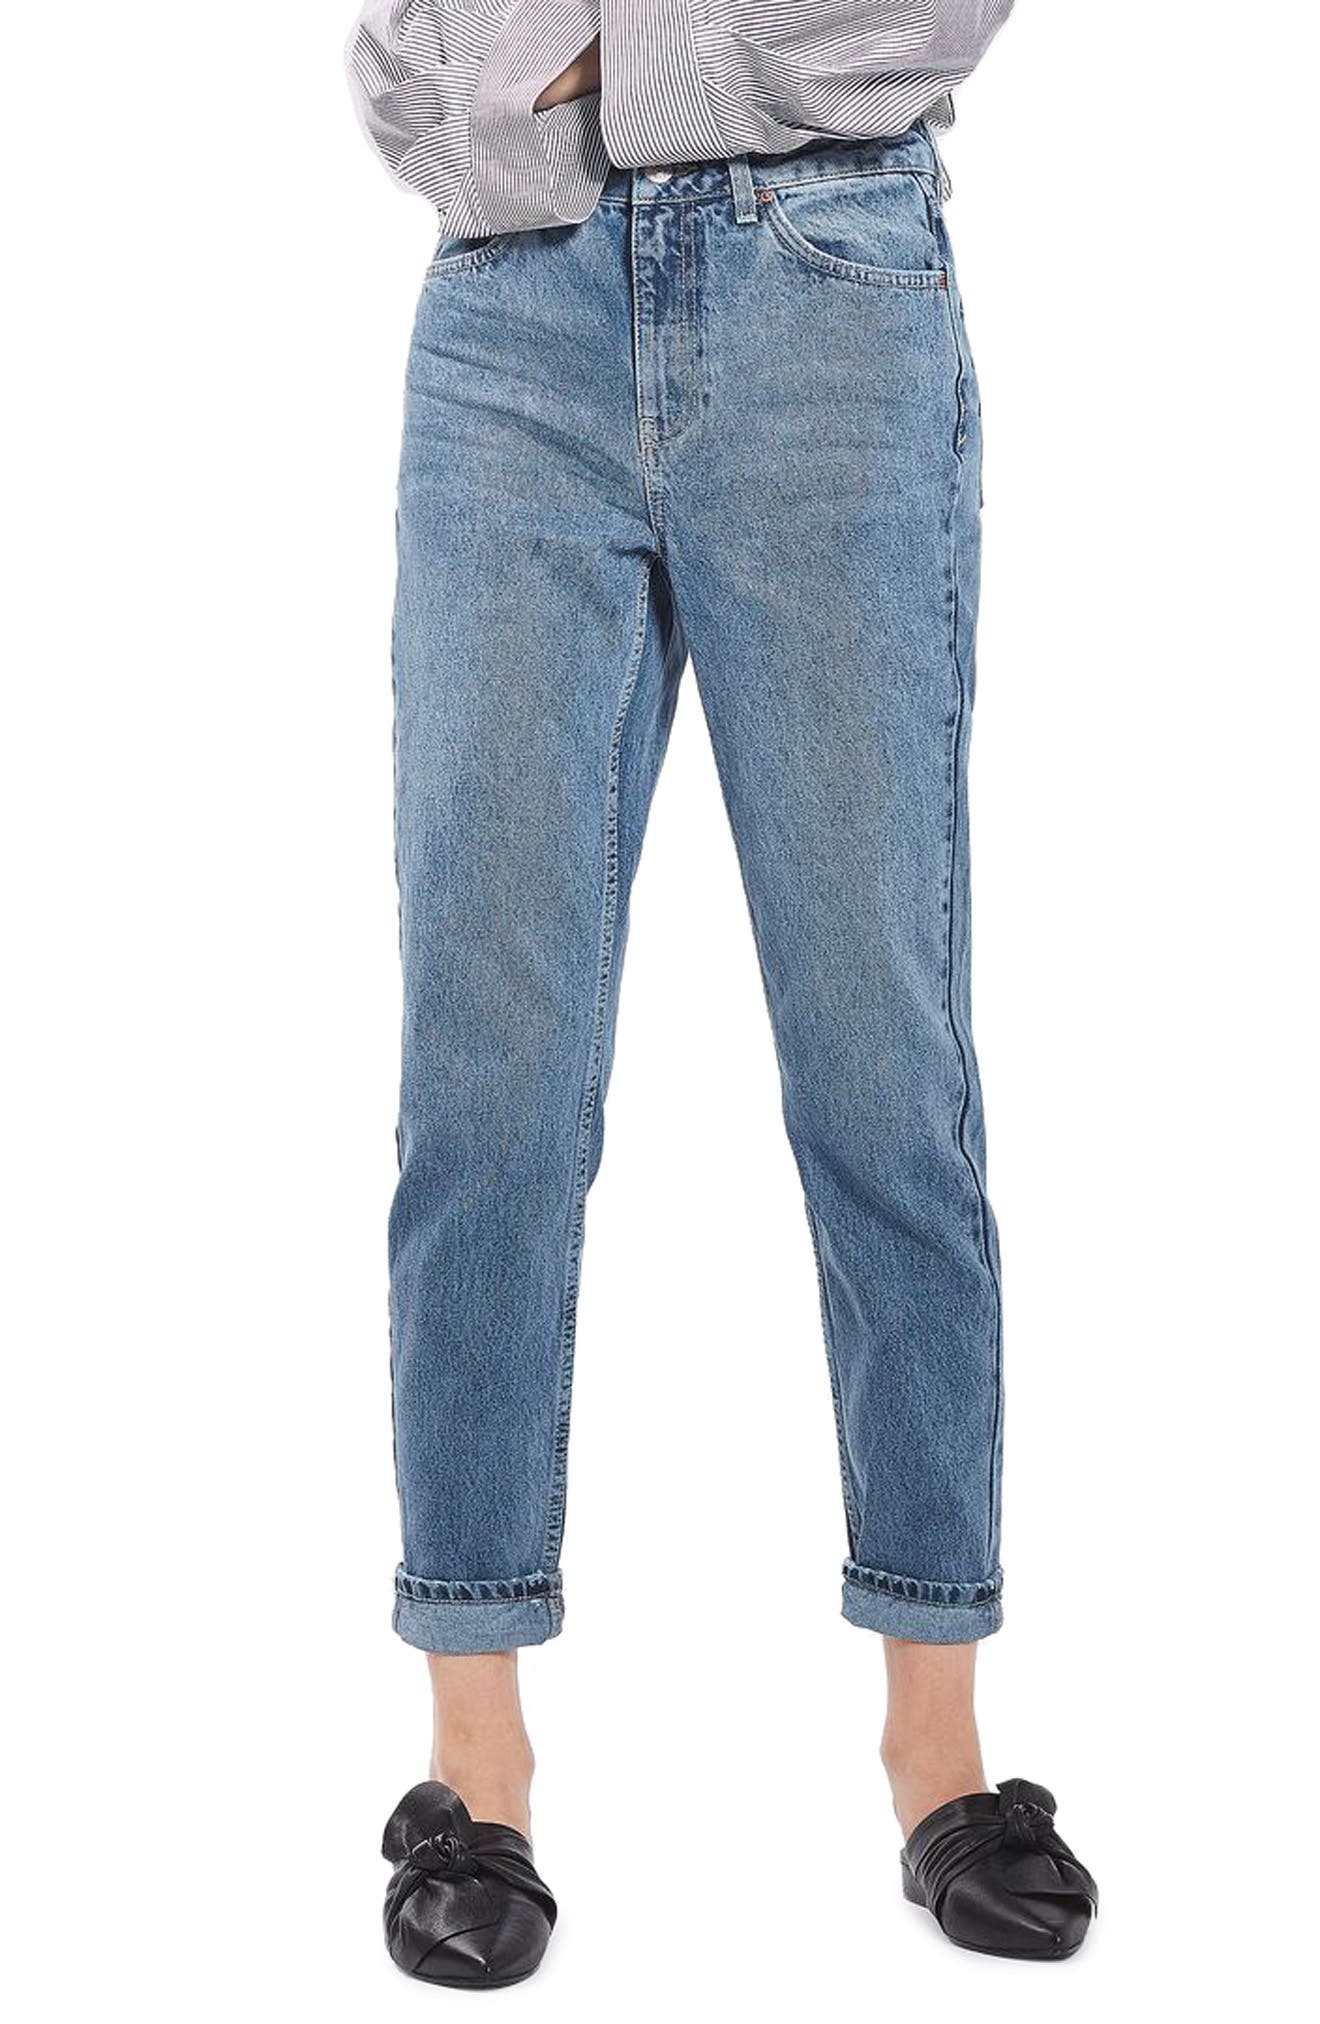 nordstrom rack topshop jeans